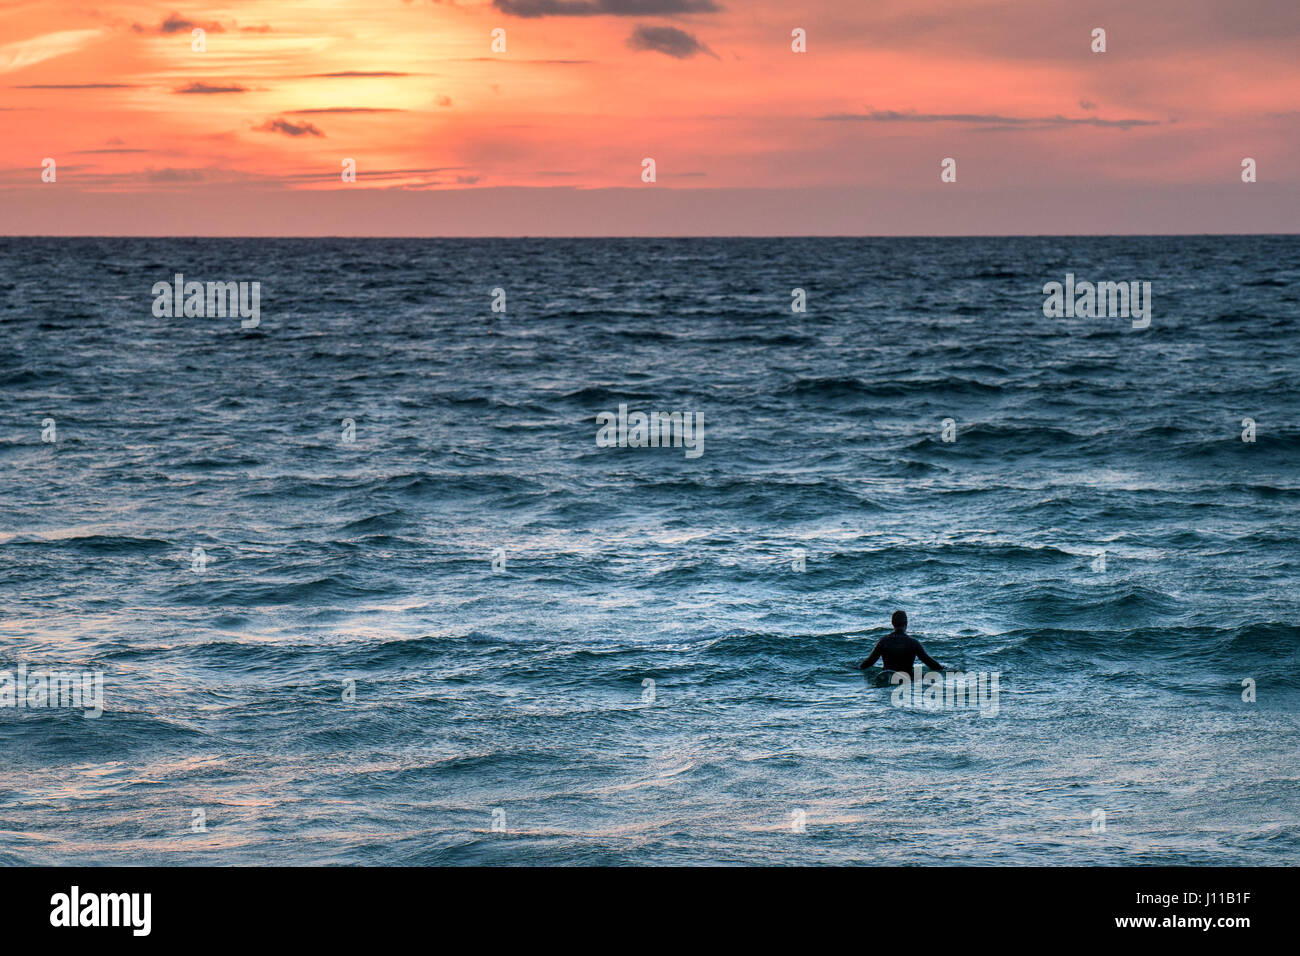 Surfen UK Surfer einsamer Surfer Fistral Cornwall warten für eine Welle Sonnenuntergang intensiver Sonnenuntergang Meer Wassersport Abend Tourismus körperlicher Aktivität Stockfoto